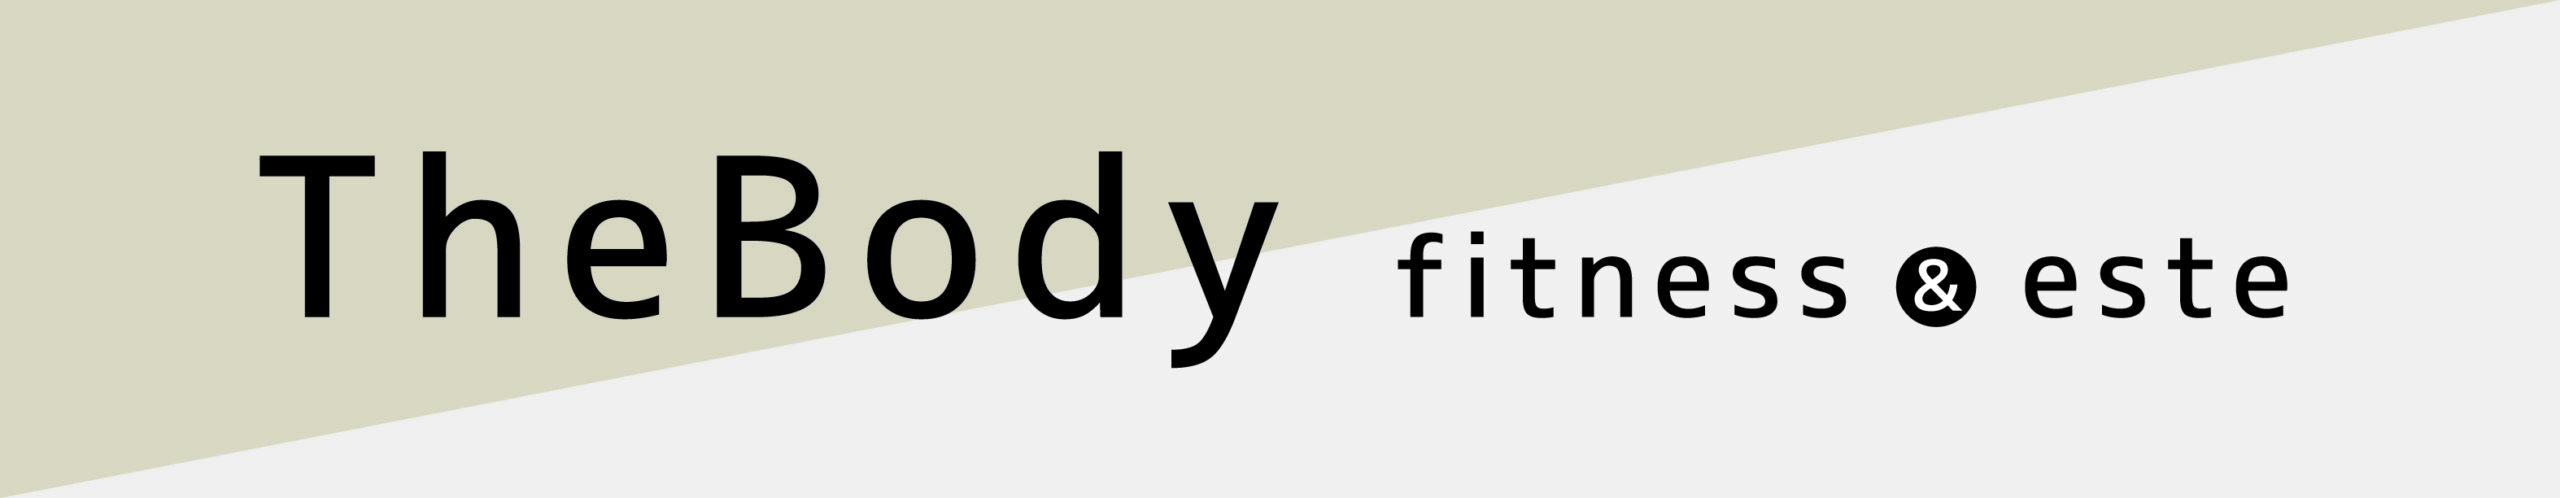 TheBody fitness&este